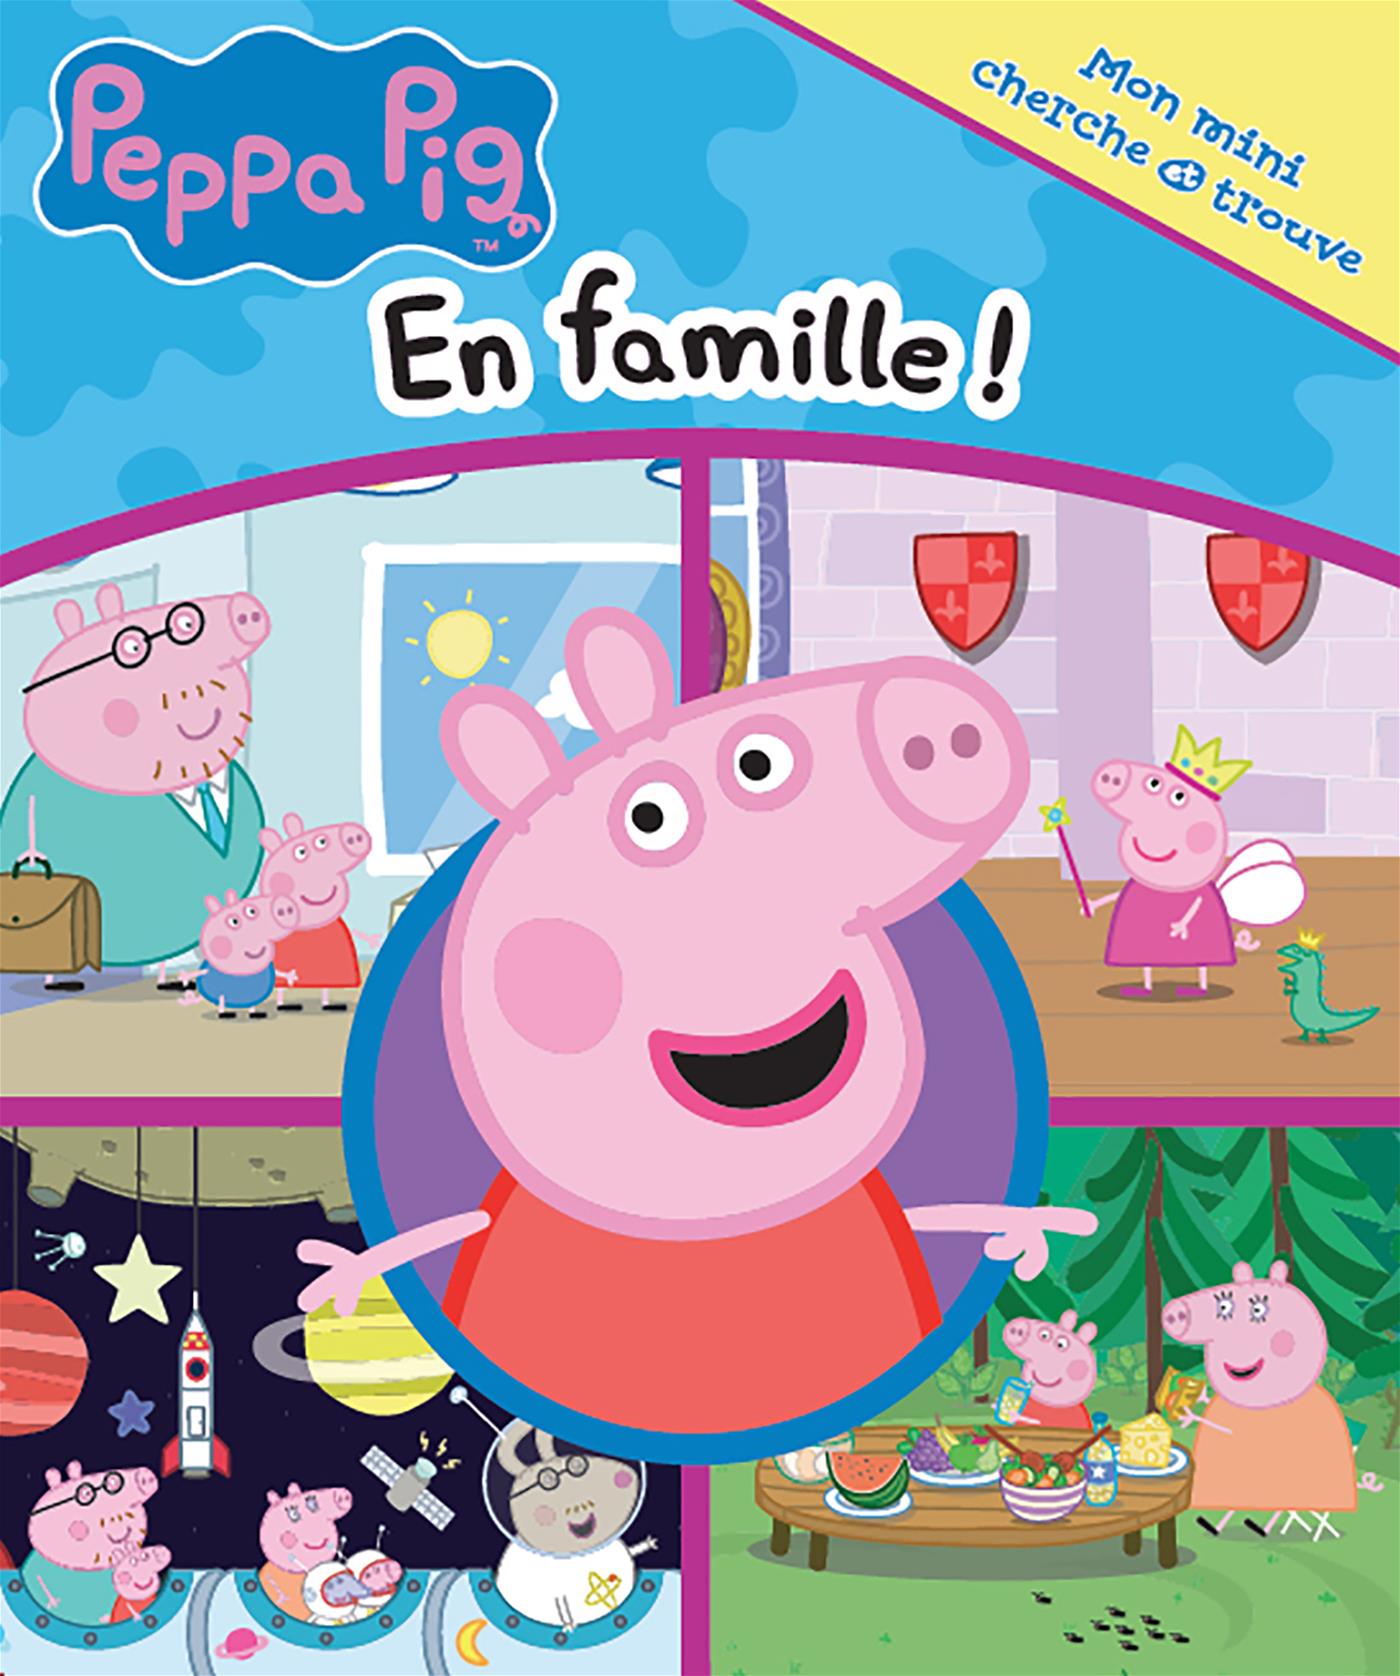 Livre Peppa Pig : Tous les Livres pour Enfant Peppa Pig